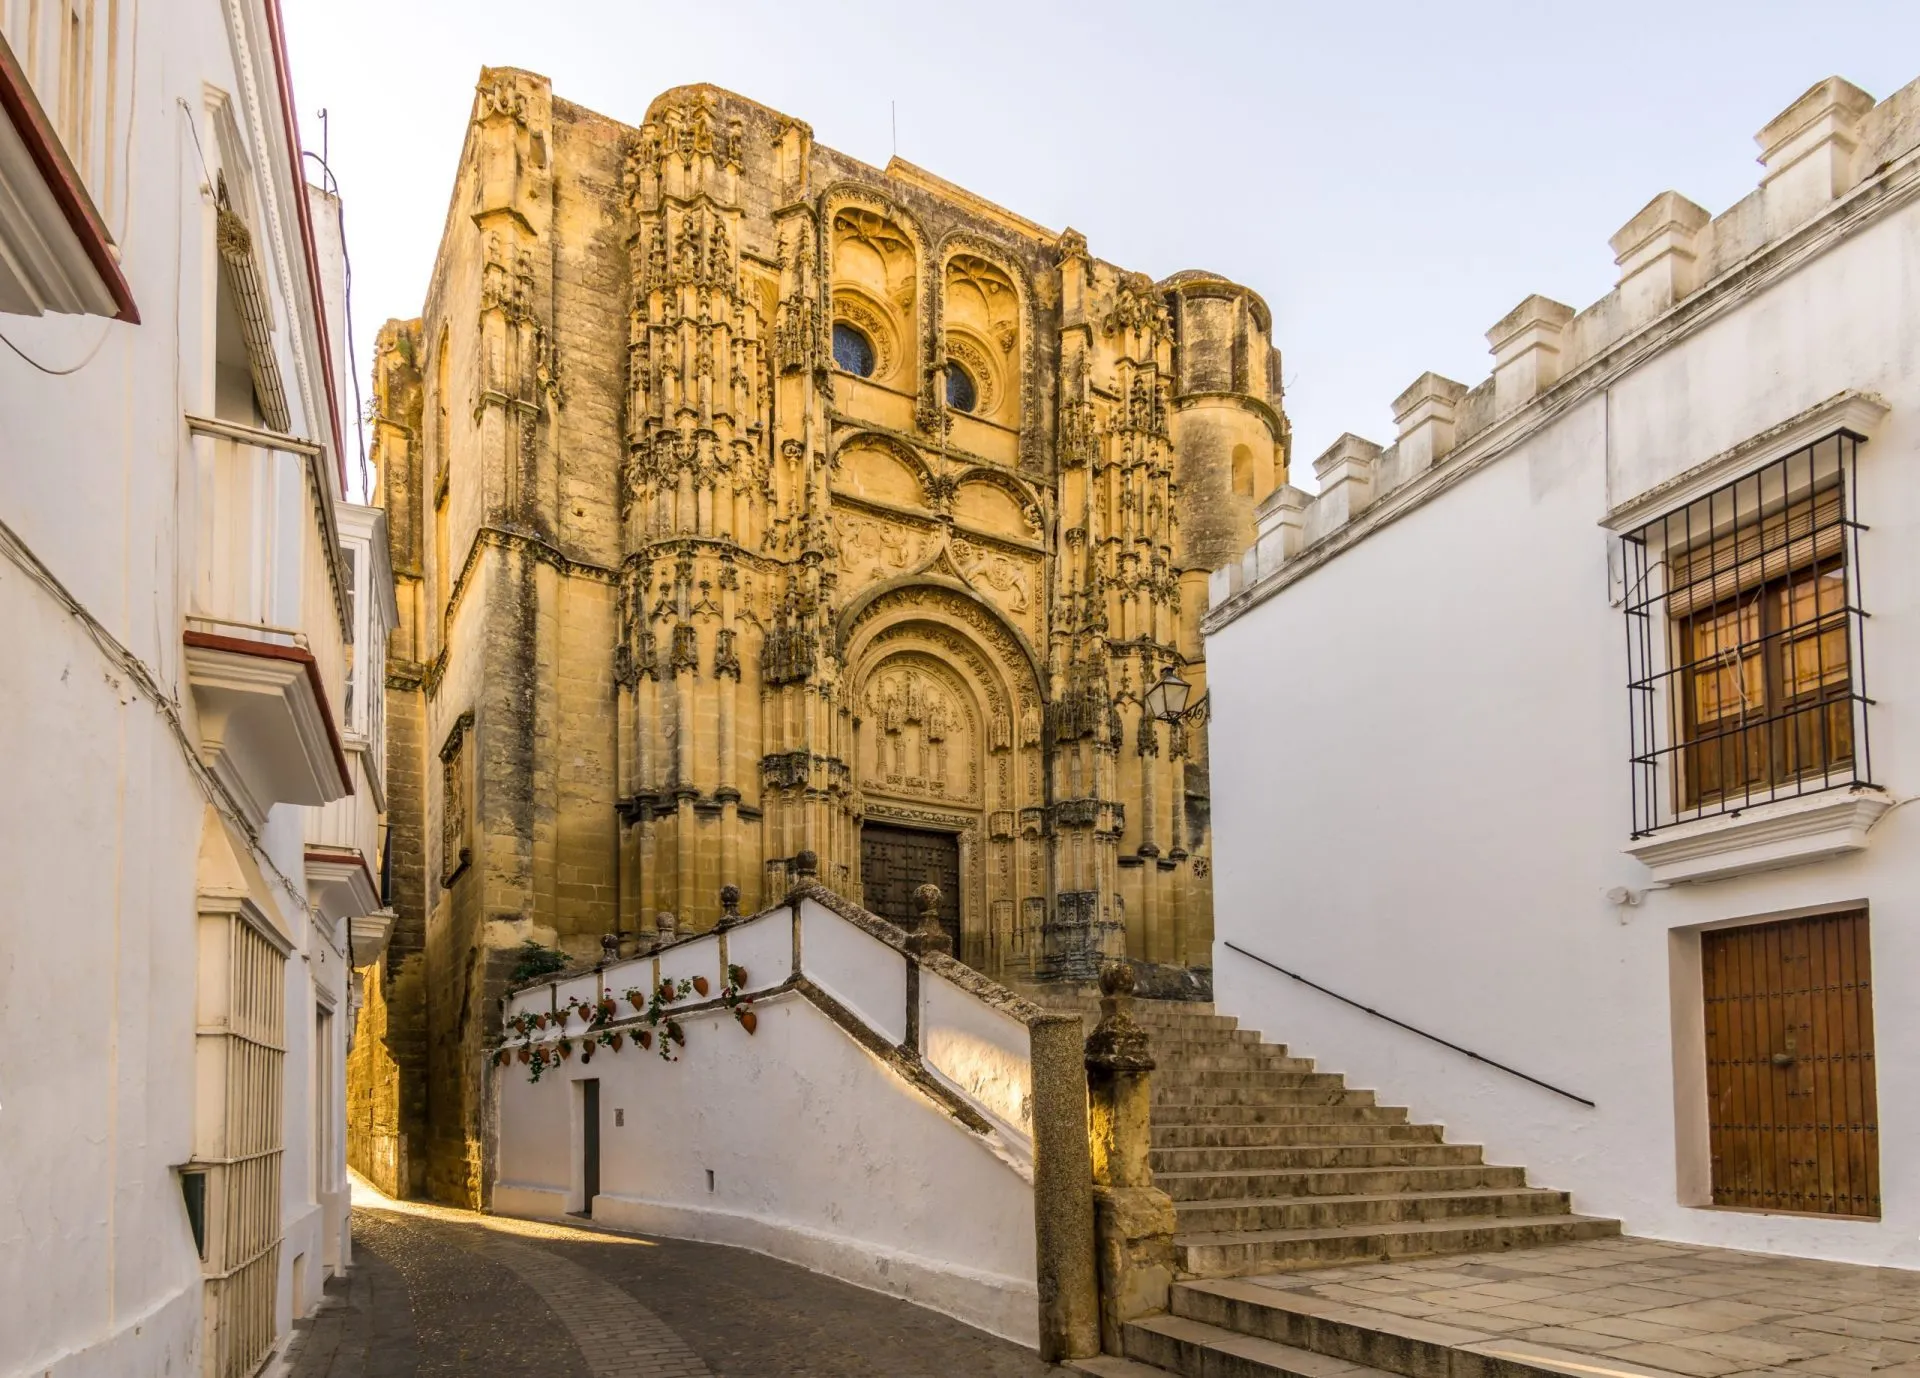 Church of Santa Maria in Arcos de la Frontera, Spain